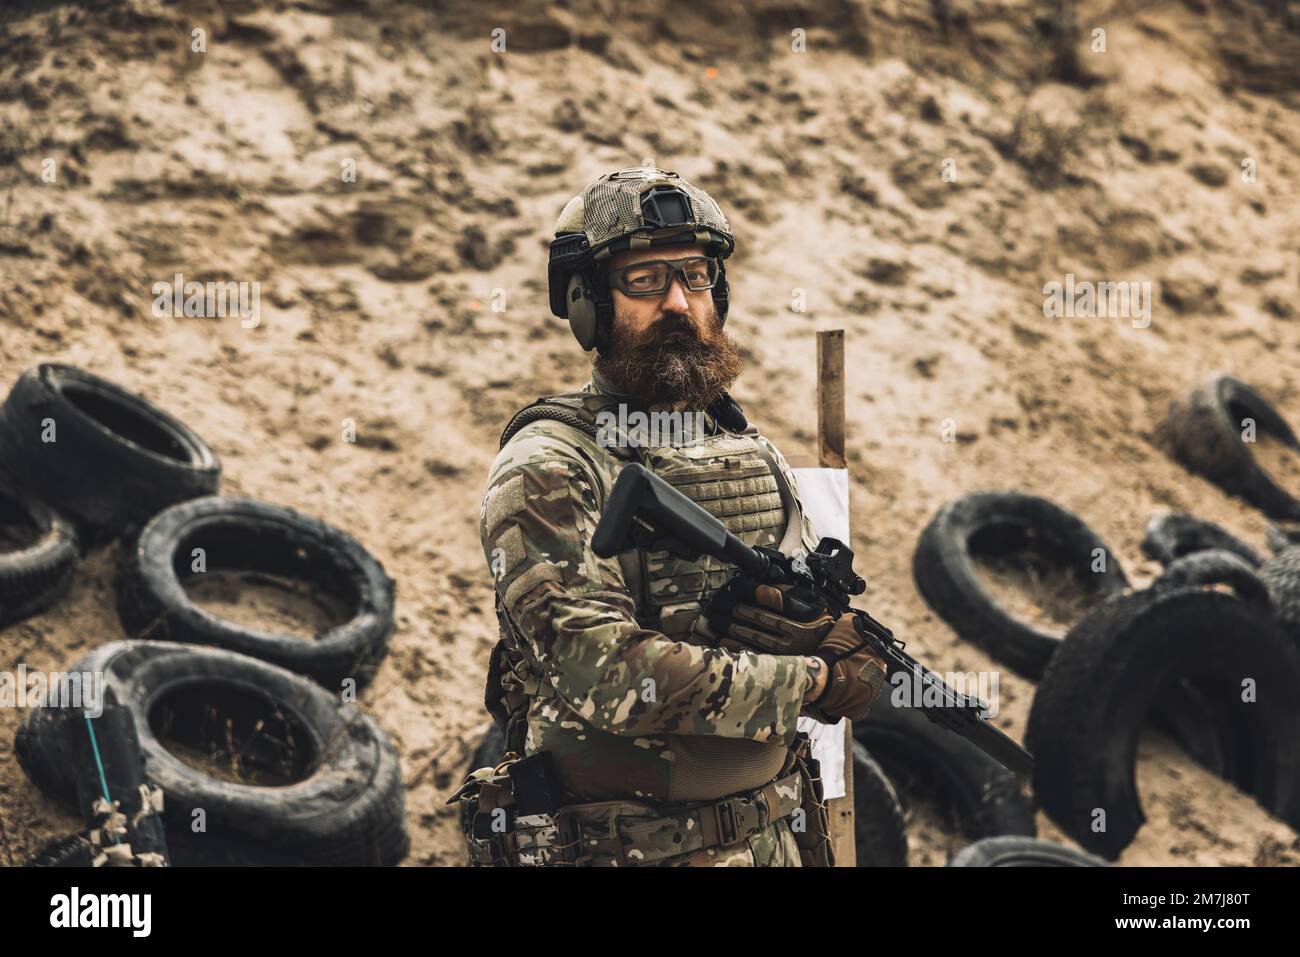 Soldat mûr debout près de la cible de tir avec le fusil dans les mains Banque D'Images